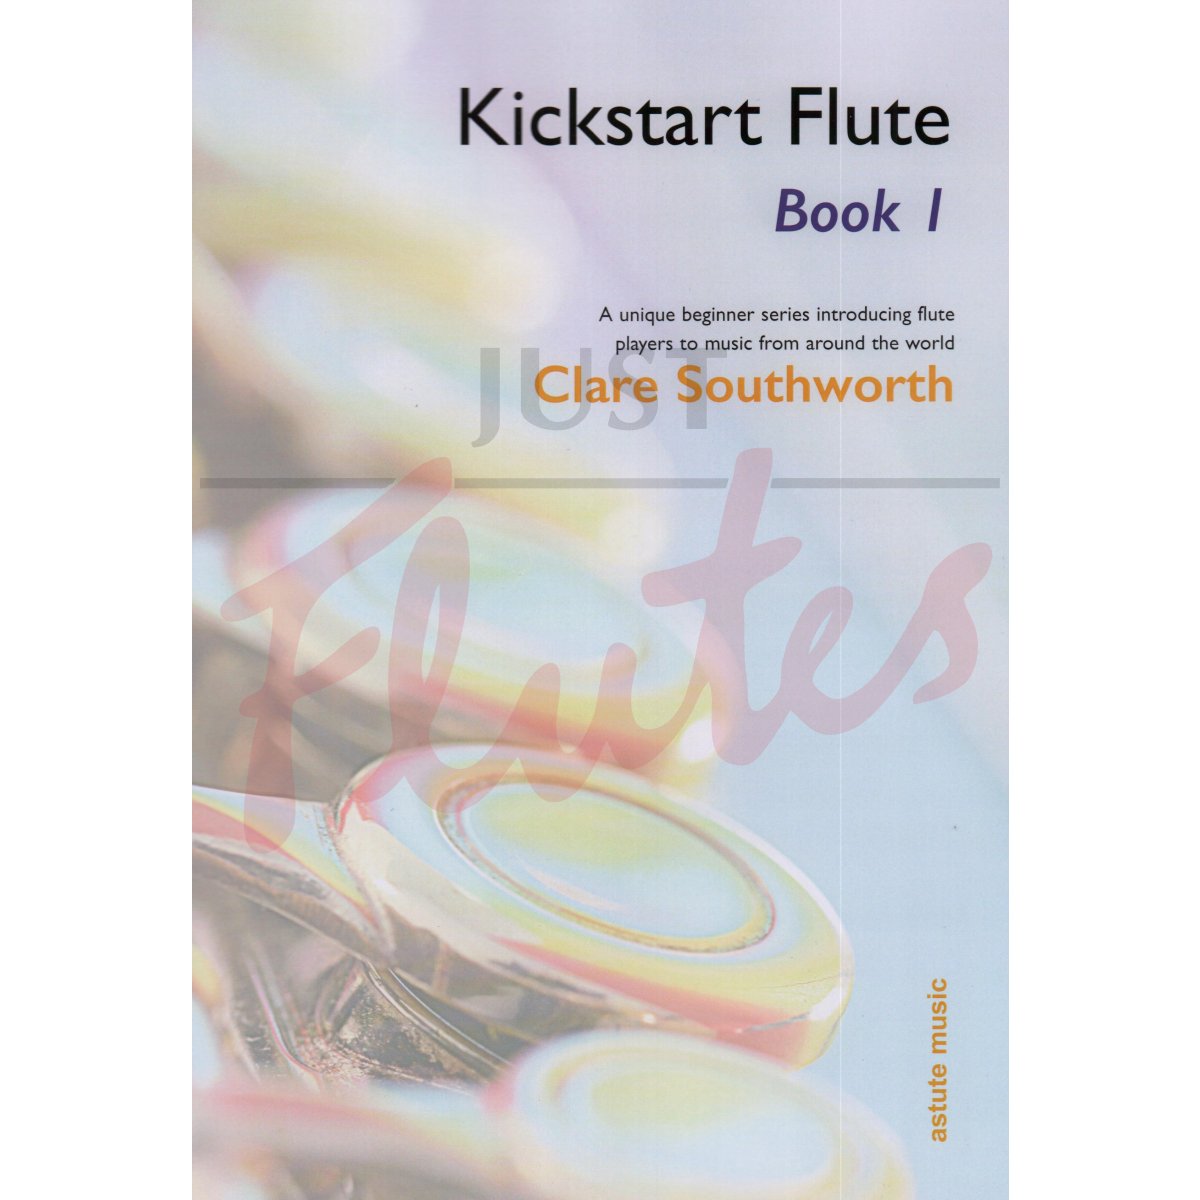 Kickstart Flute Book 1